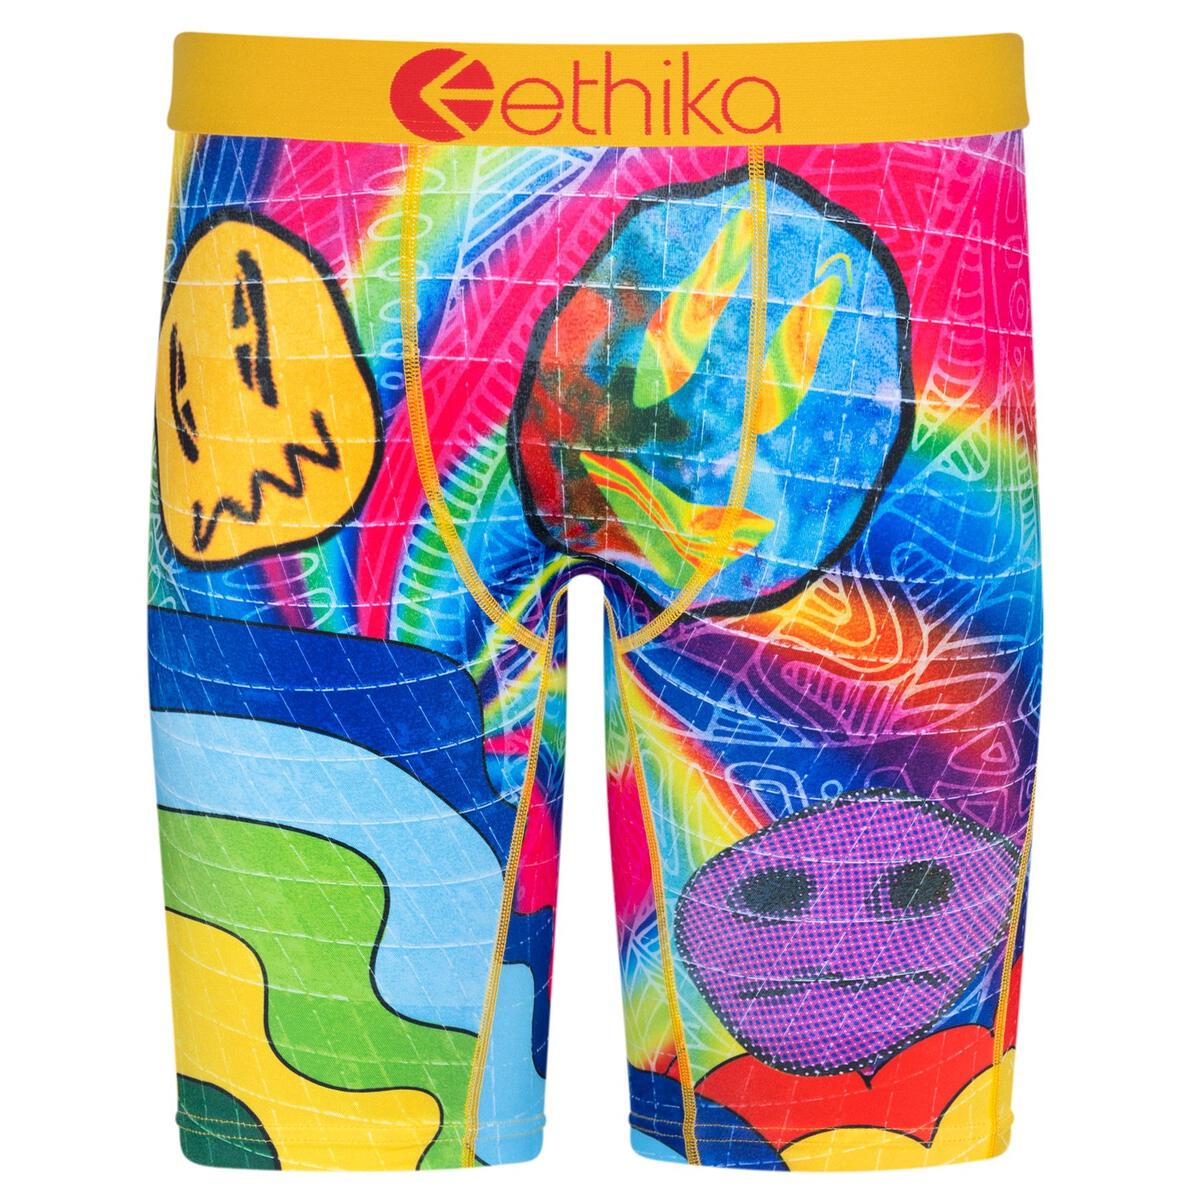 Ethika Men's Underwear • compare today & find prices »